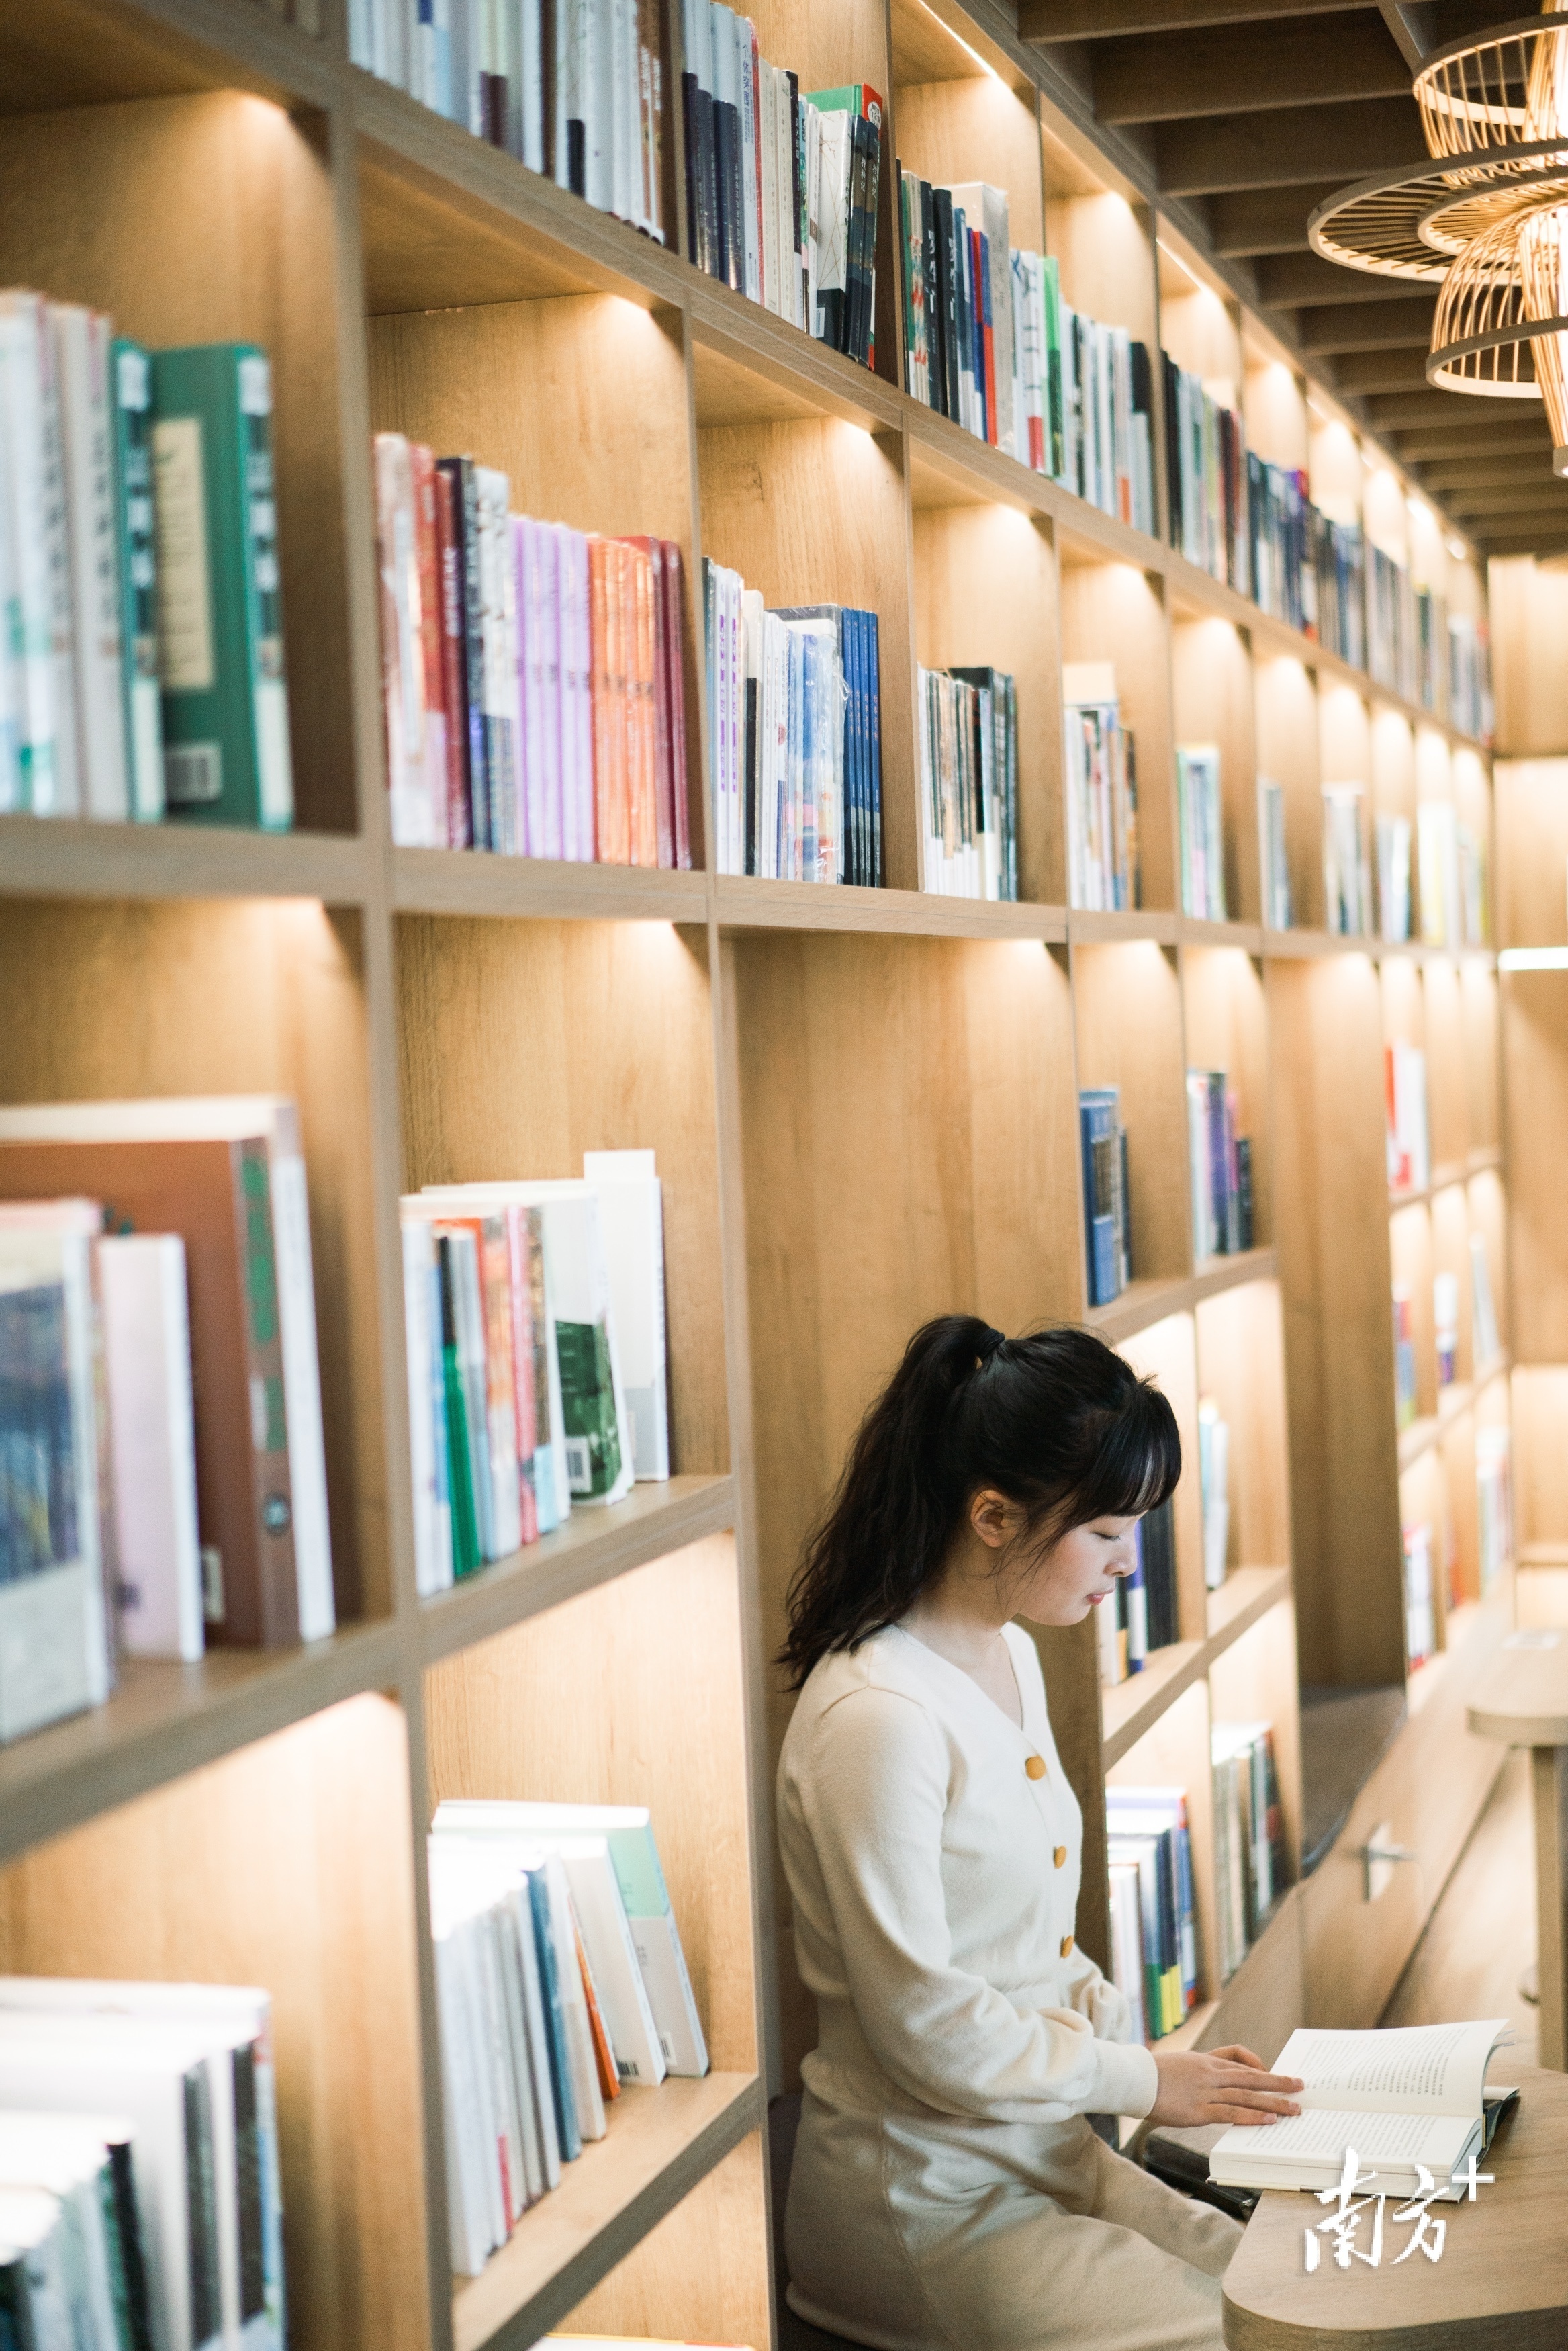 惠州积极打造新型文化空间，满足公众多元化精神文化需求。图为市民在观湖书院读书。 